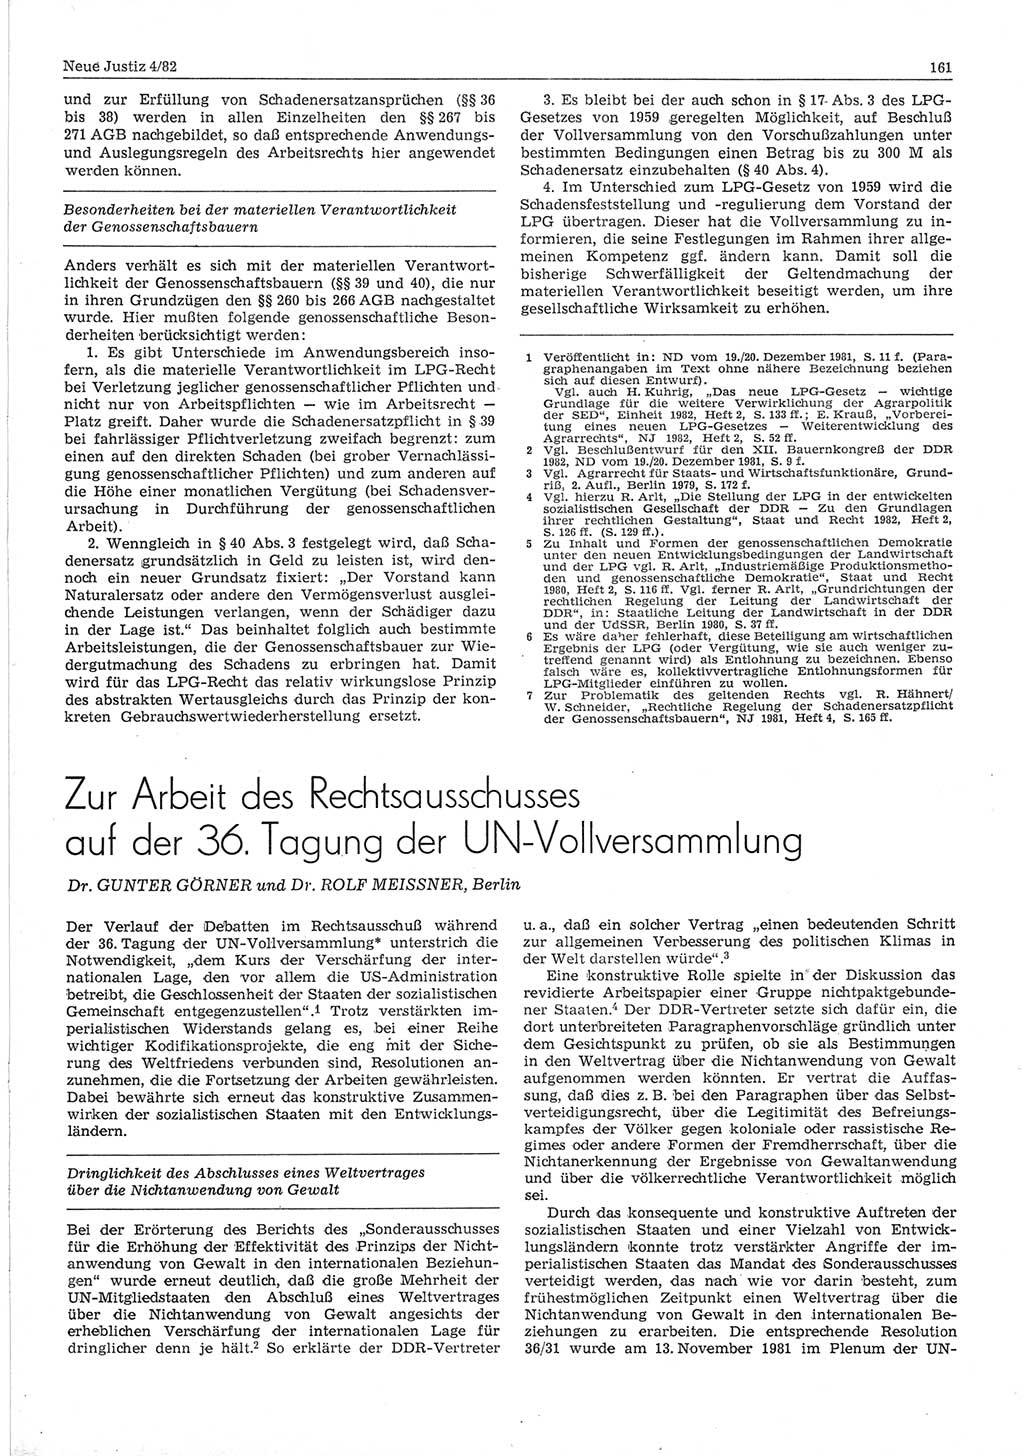 Neue Justiz (NJ), Zeitschrift für sozialistisches Recht und Gesetzlichkeit [Deutsche Demokratische Republik (DDR)], 36. Jahrgang 1982, Seite 161 (NJ DDR 1982, S. 161)